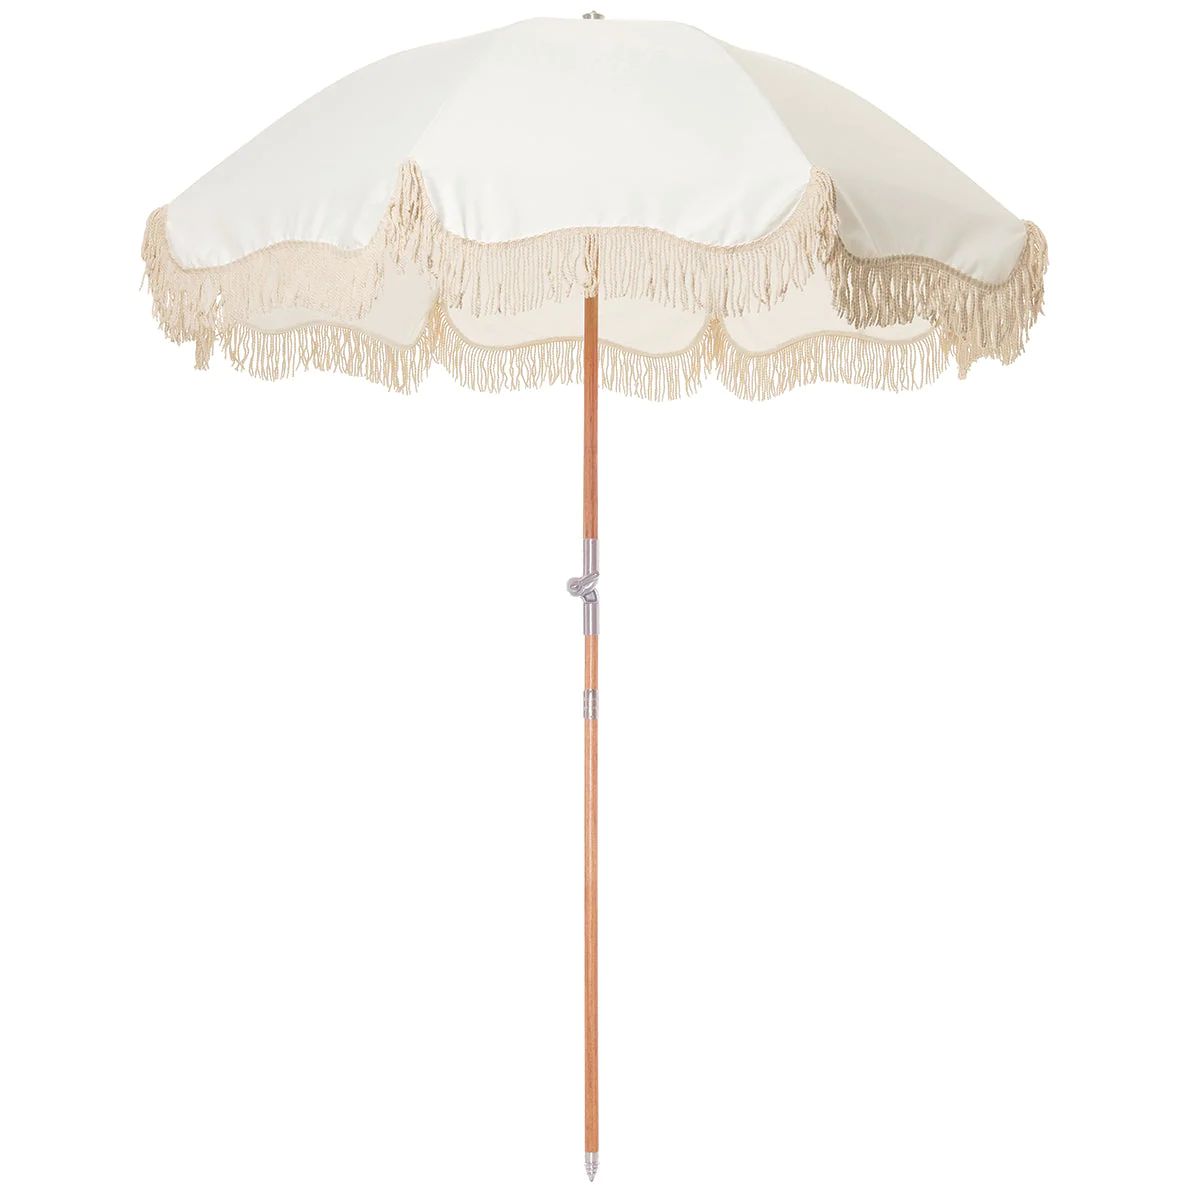 Antique White Premium Beach Umbrella | Burke Decor